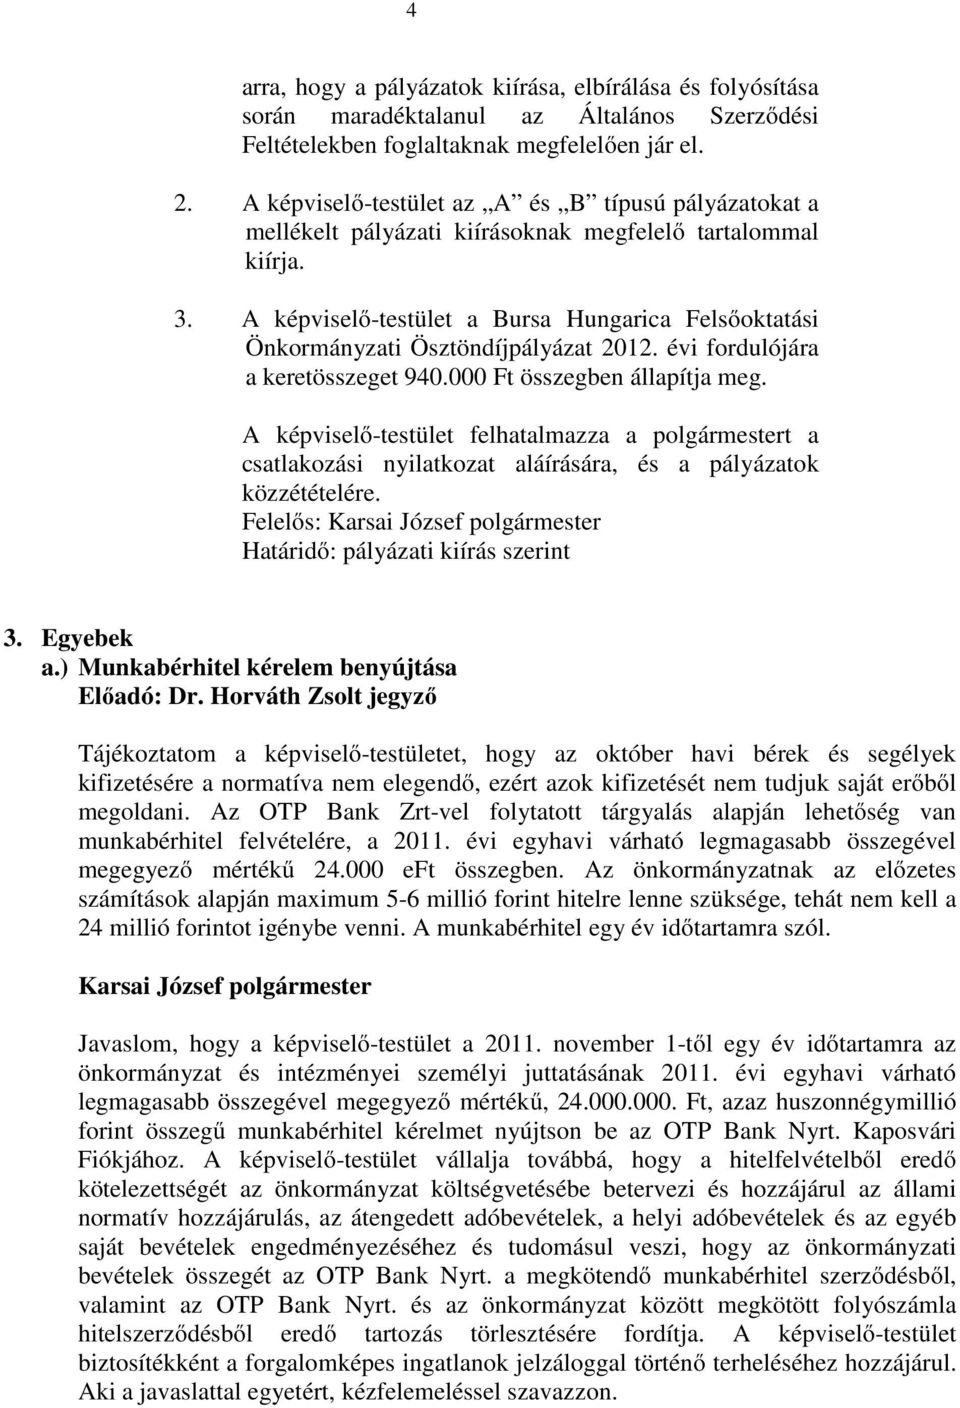 A képviselı-testület a Bursa Hungarica Felsıoktatási Önkormányzati Ösztöndíjpályázat 2012. évi fordulójára a keretösszeget 940.000 Ft összegben állapítja meg.